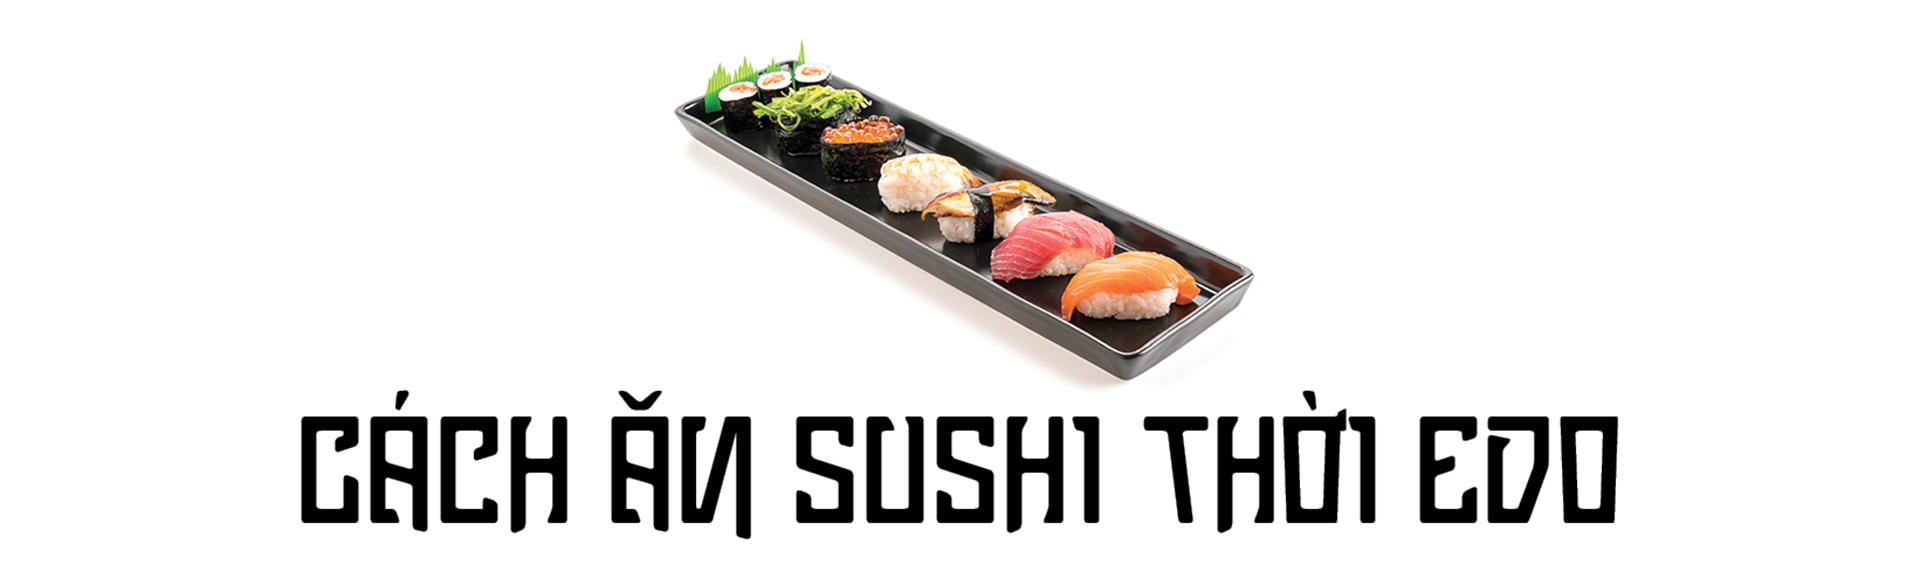 Sushi thời Edo khác gì sushi thời hiện đại? - Ảnh 6.